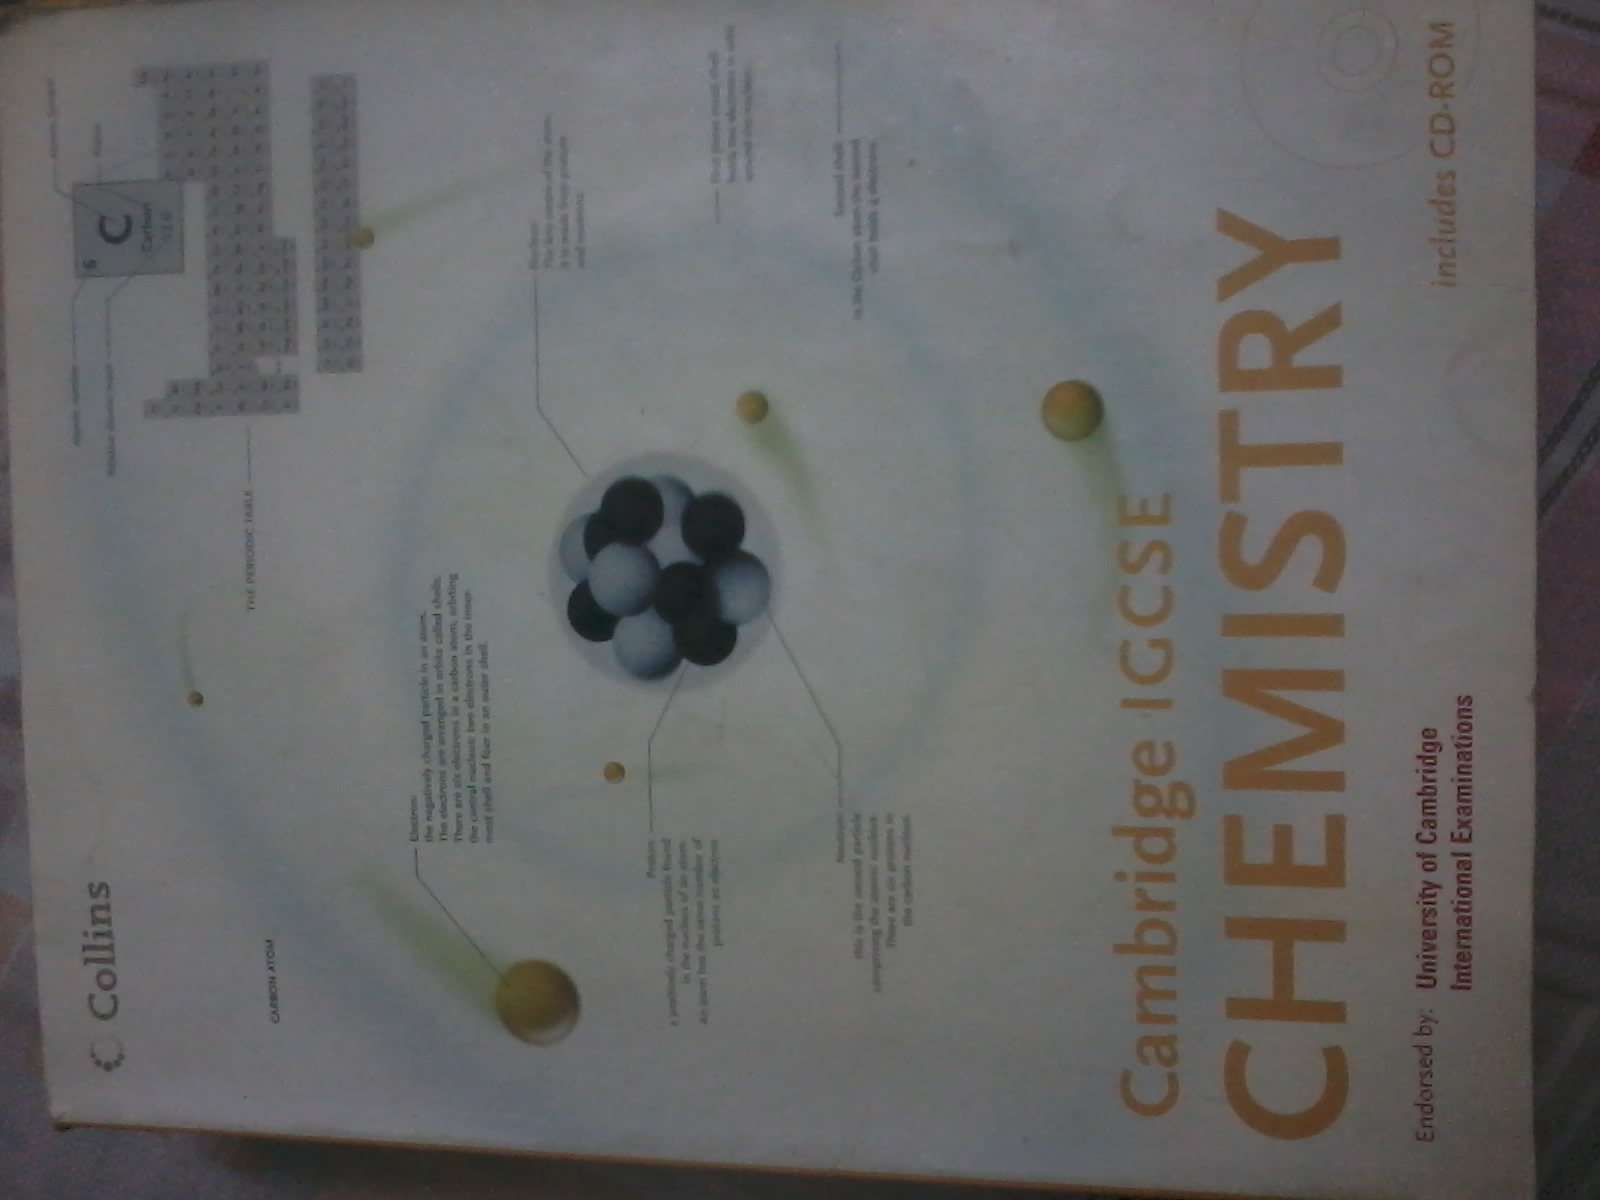 Cambridge IGCSE Chemistry
